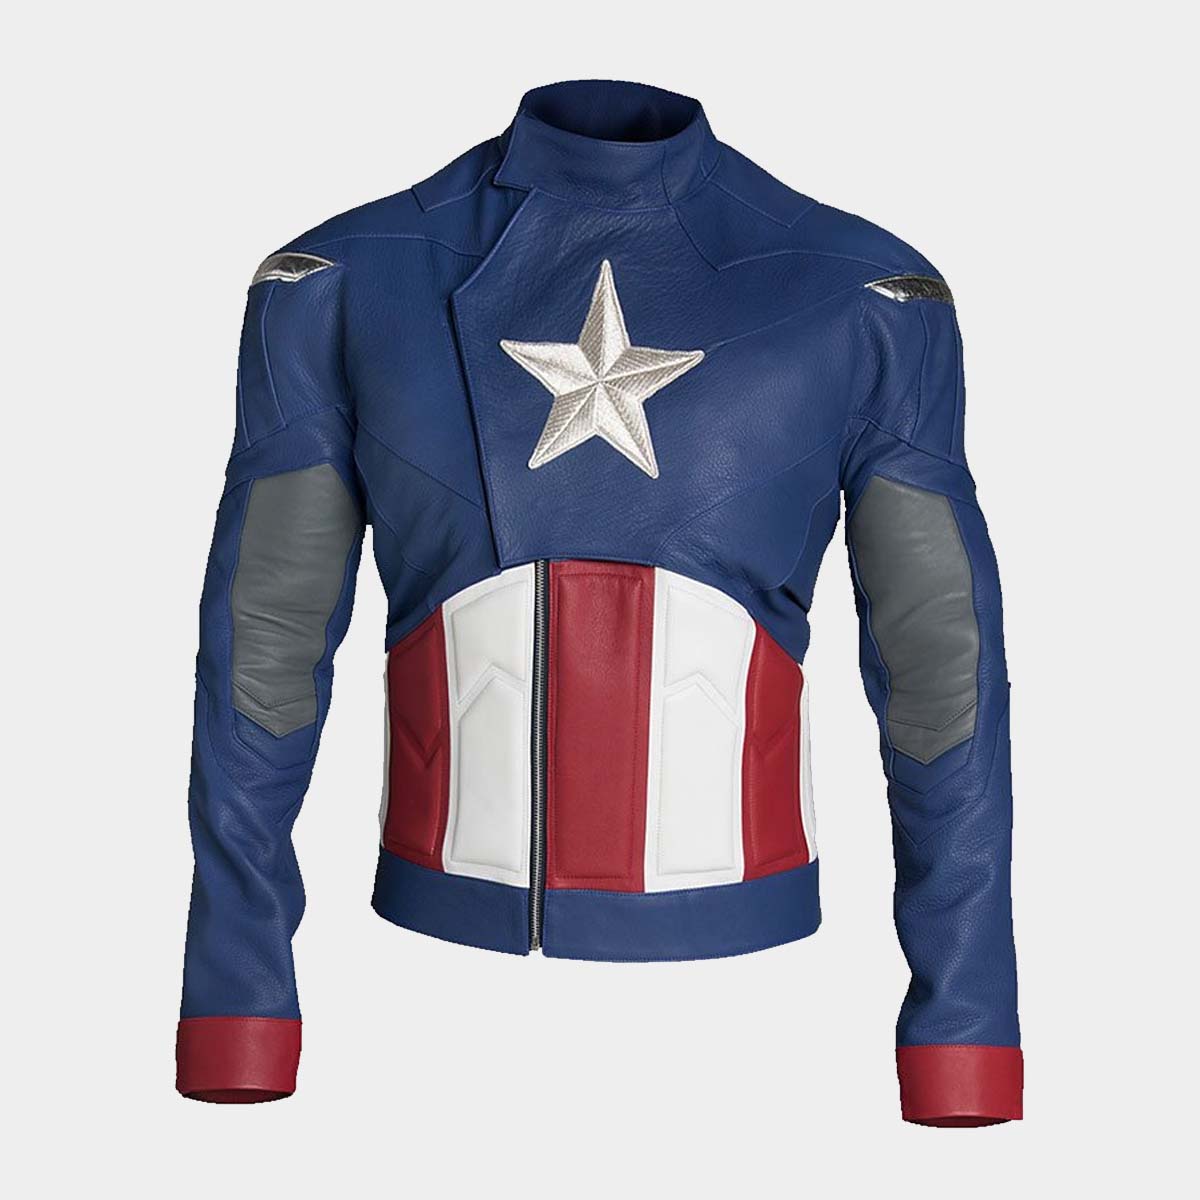 Chris Evans Avengers Endgame Jacket